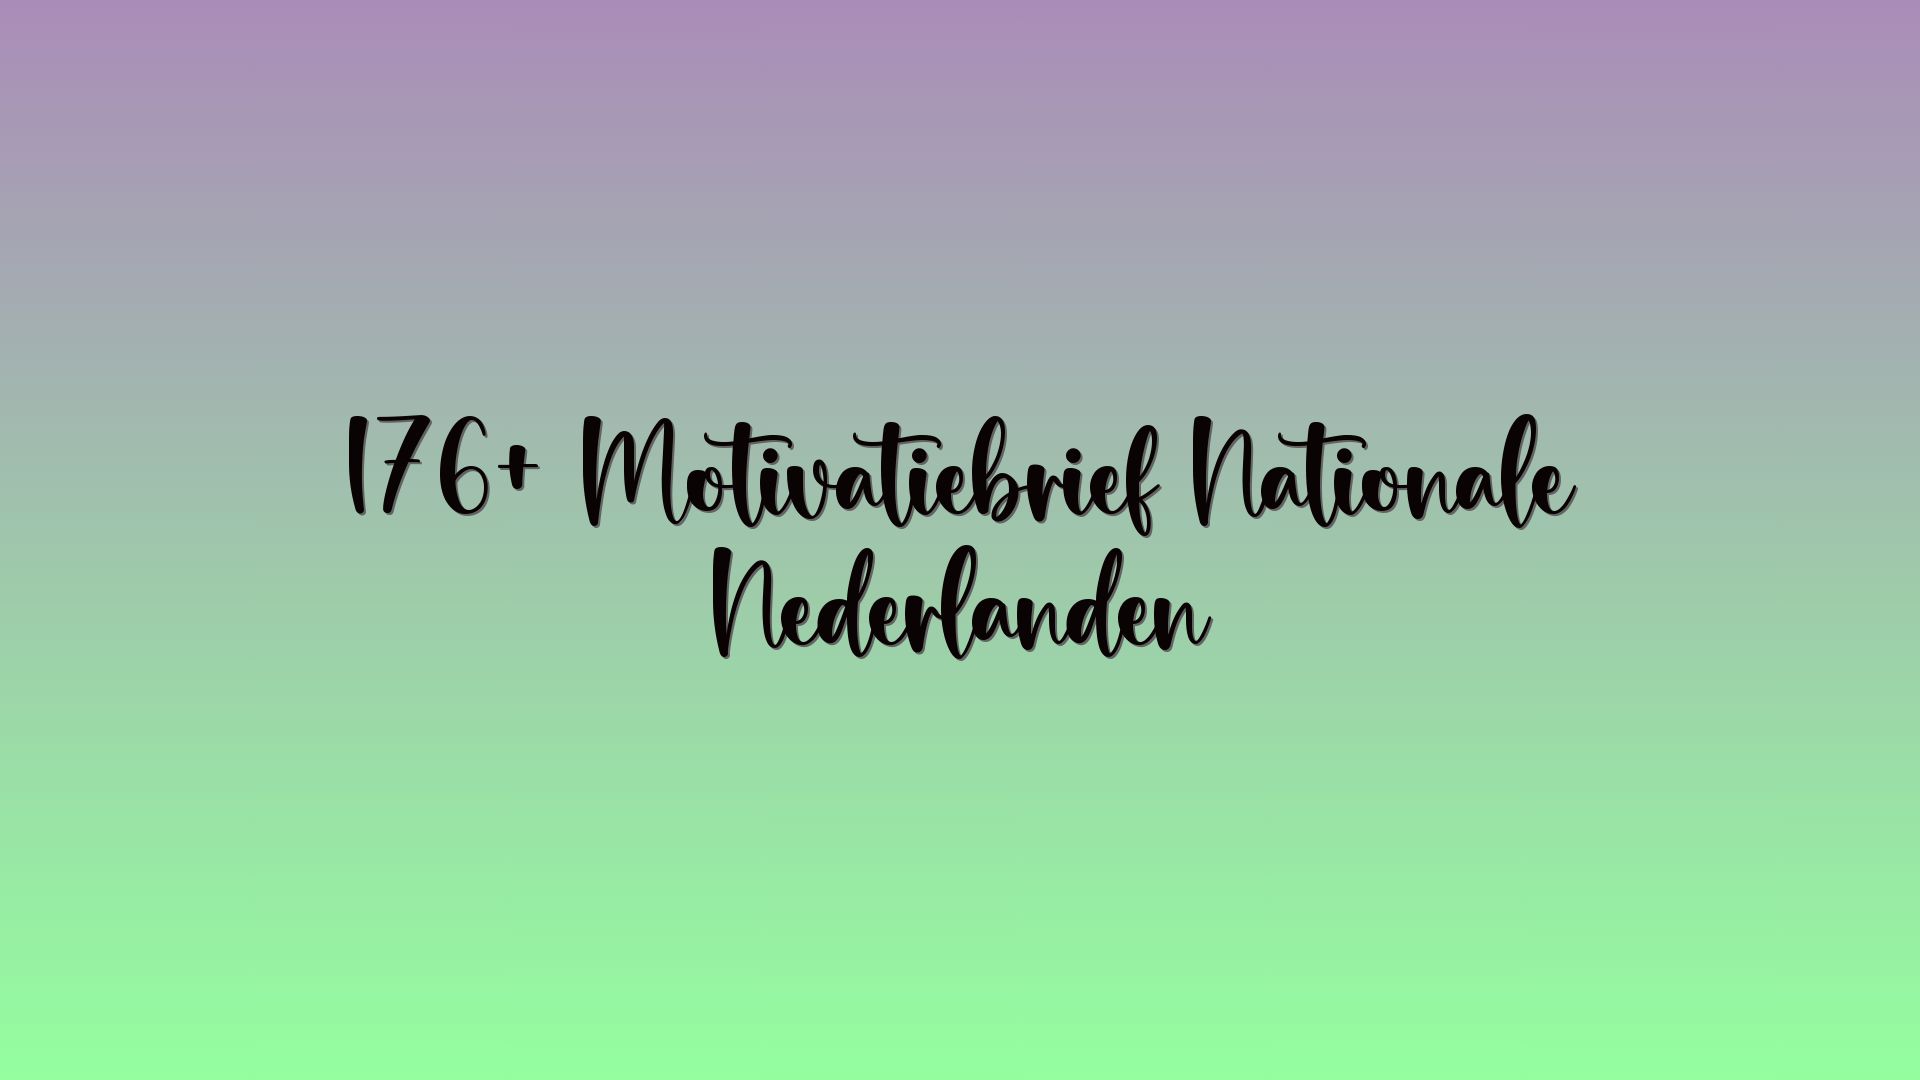 176+ Motivatiebrief Nationale Nederlanden